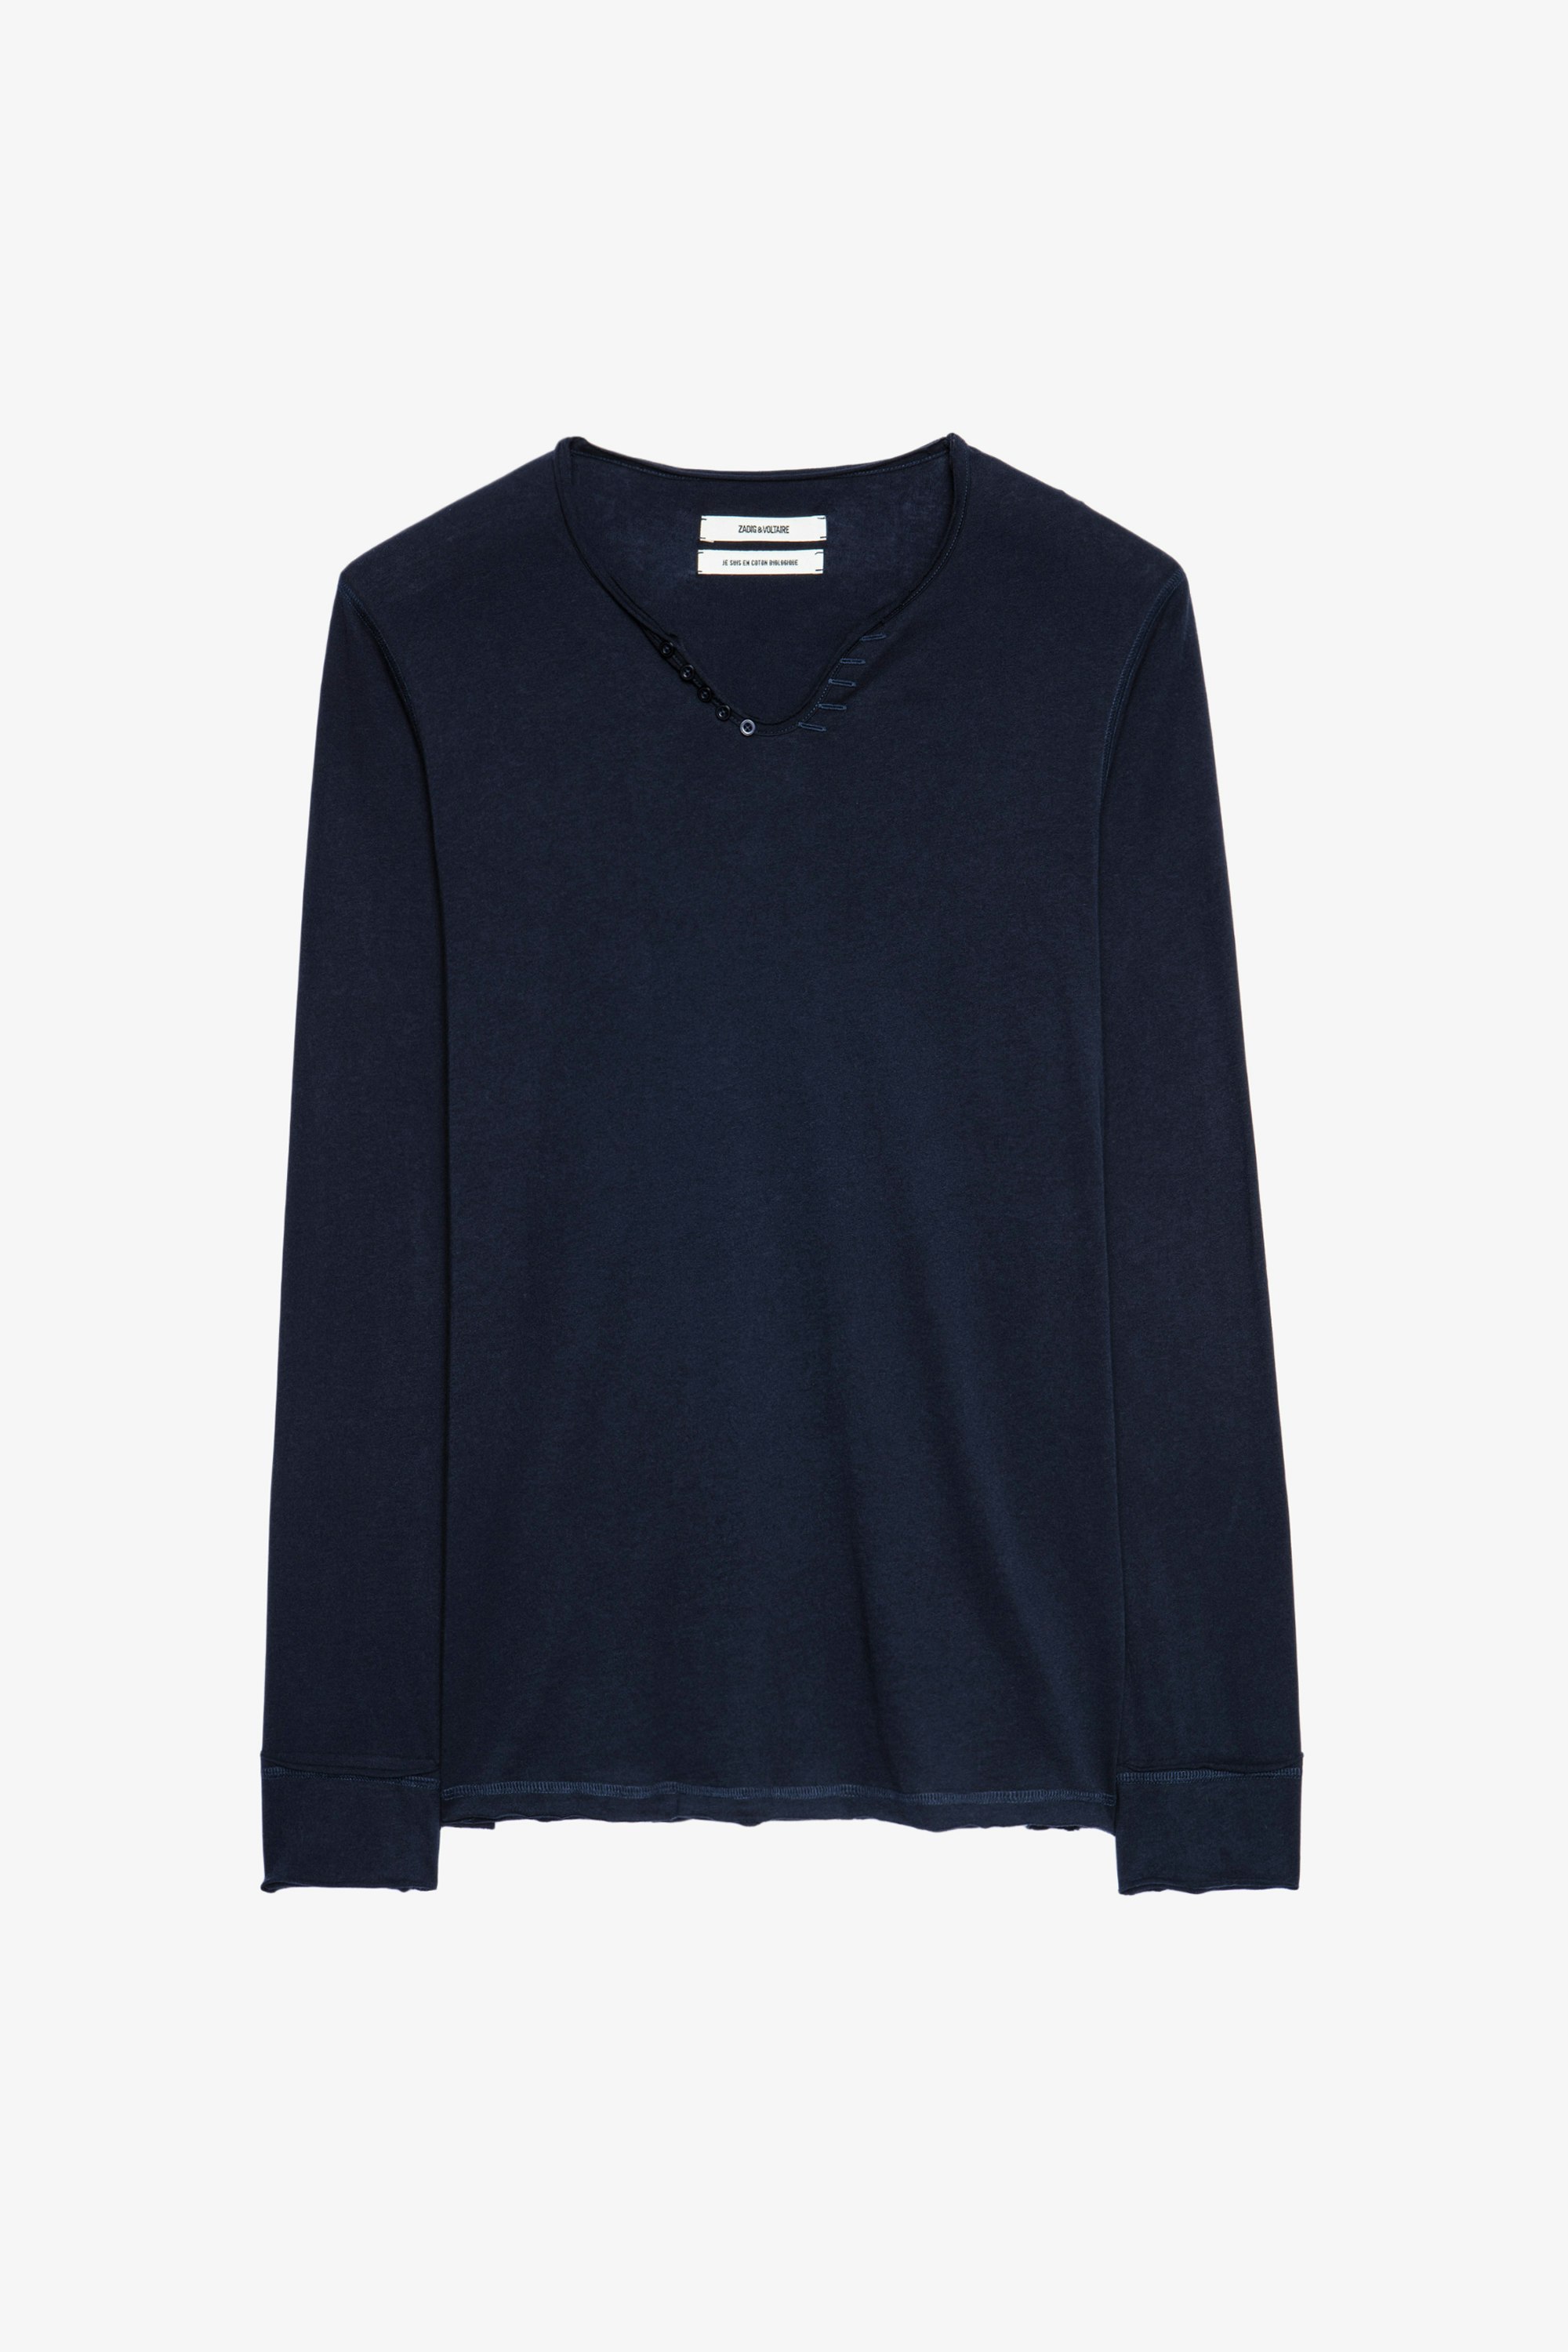 Monastir T-shirt - Men’s blue cotton henley T-shirt